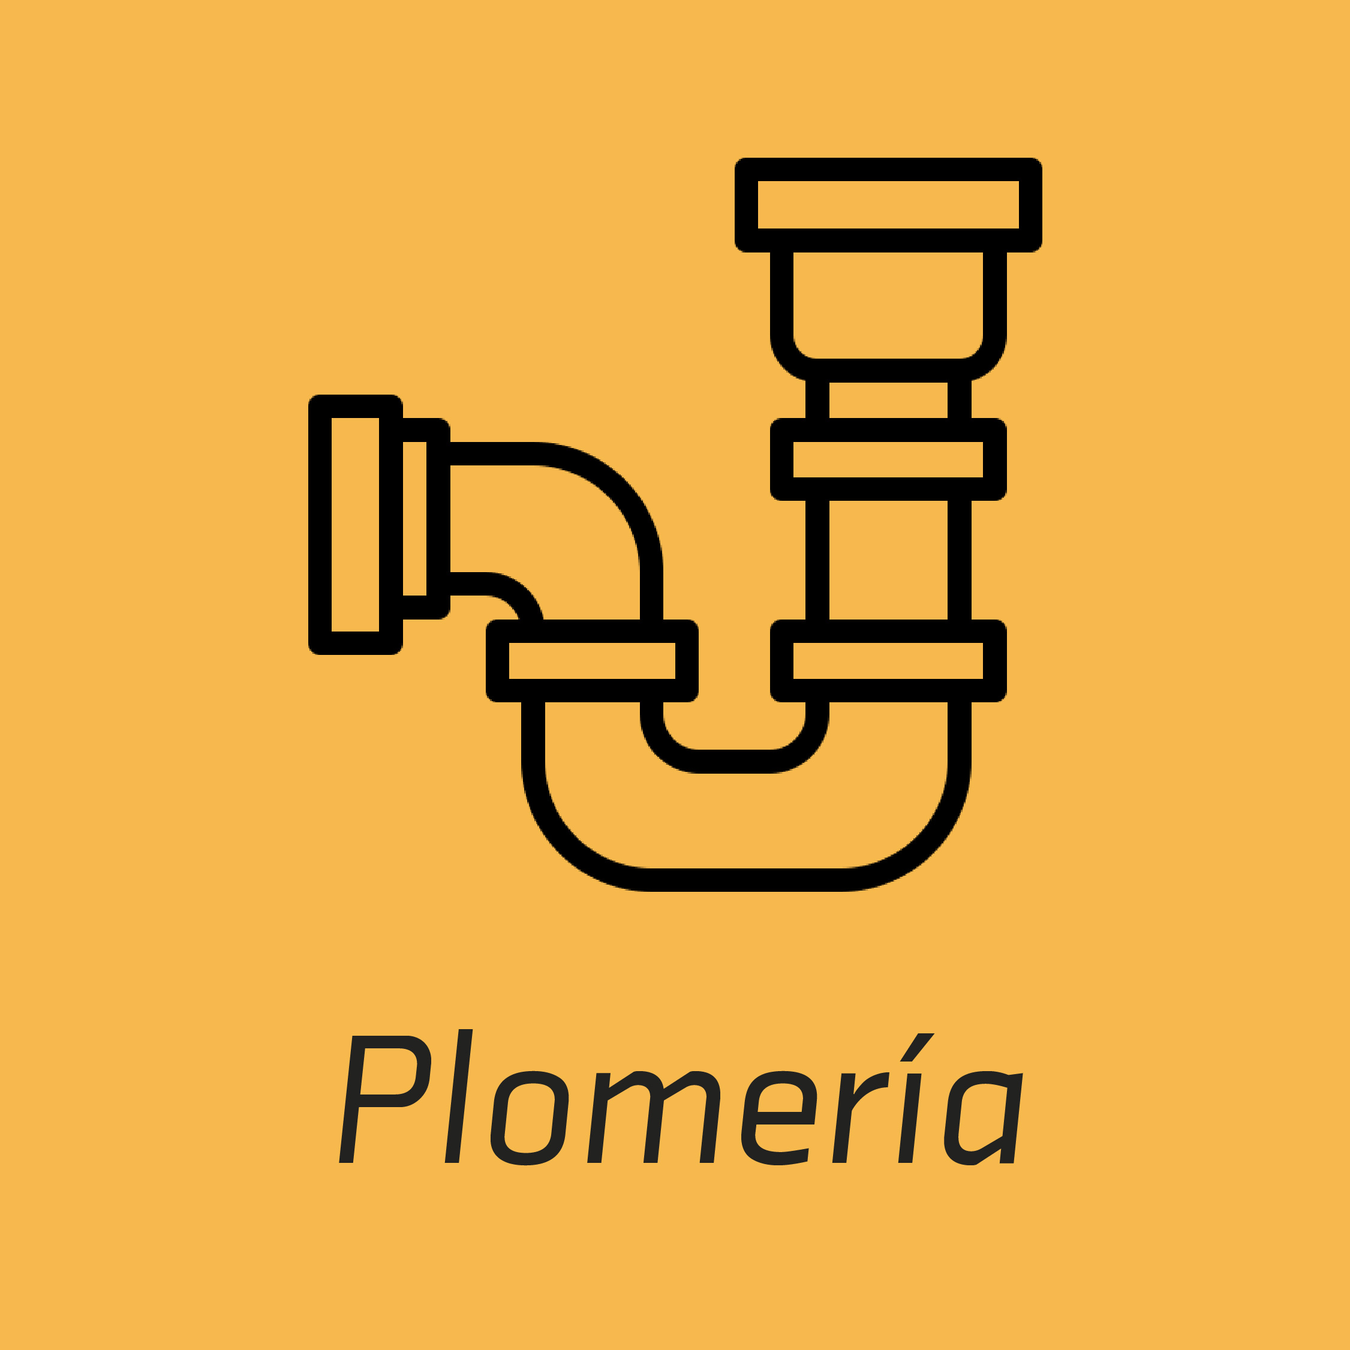 Plomeria